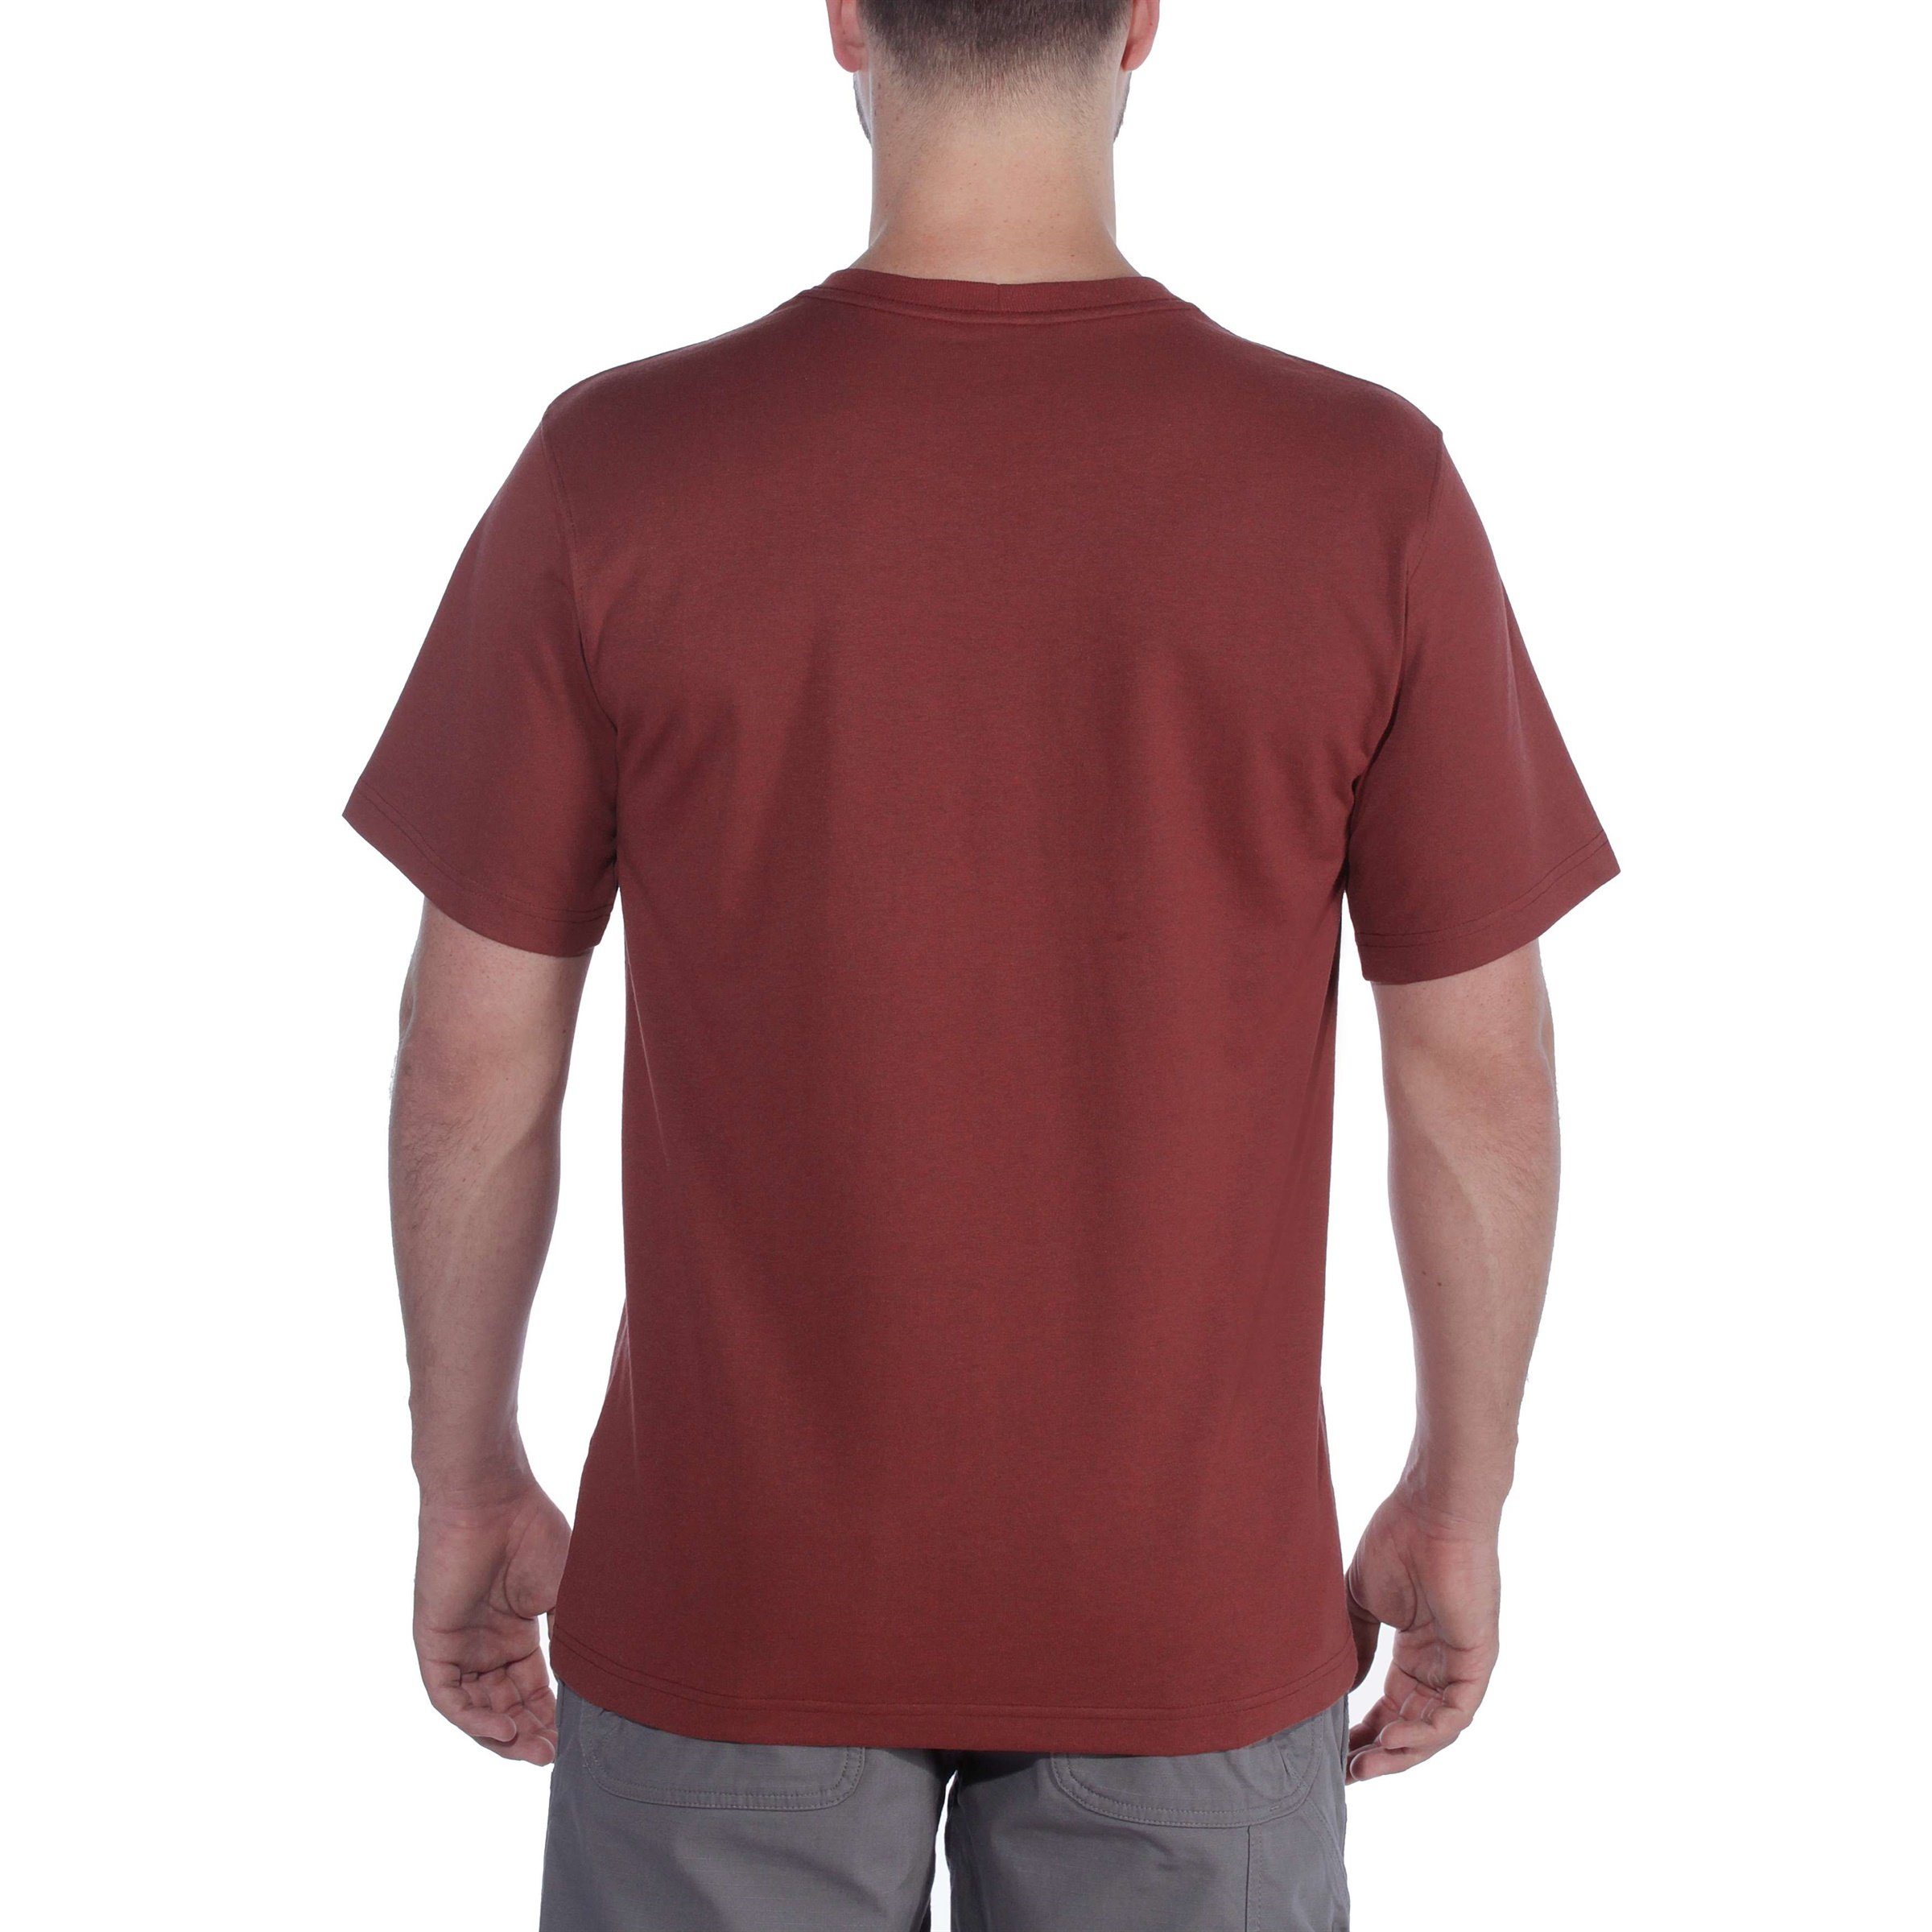 Heavyweight black Graphic T-Shirt Relaxed Herren Adult Carhartt T-Shirt Fit Short-Sleeve Logo Carhartt